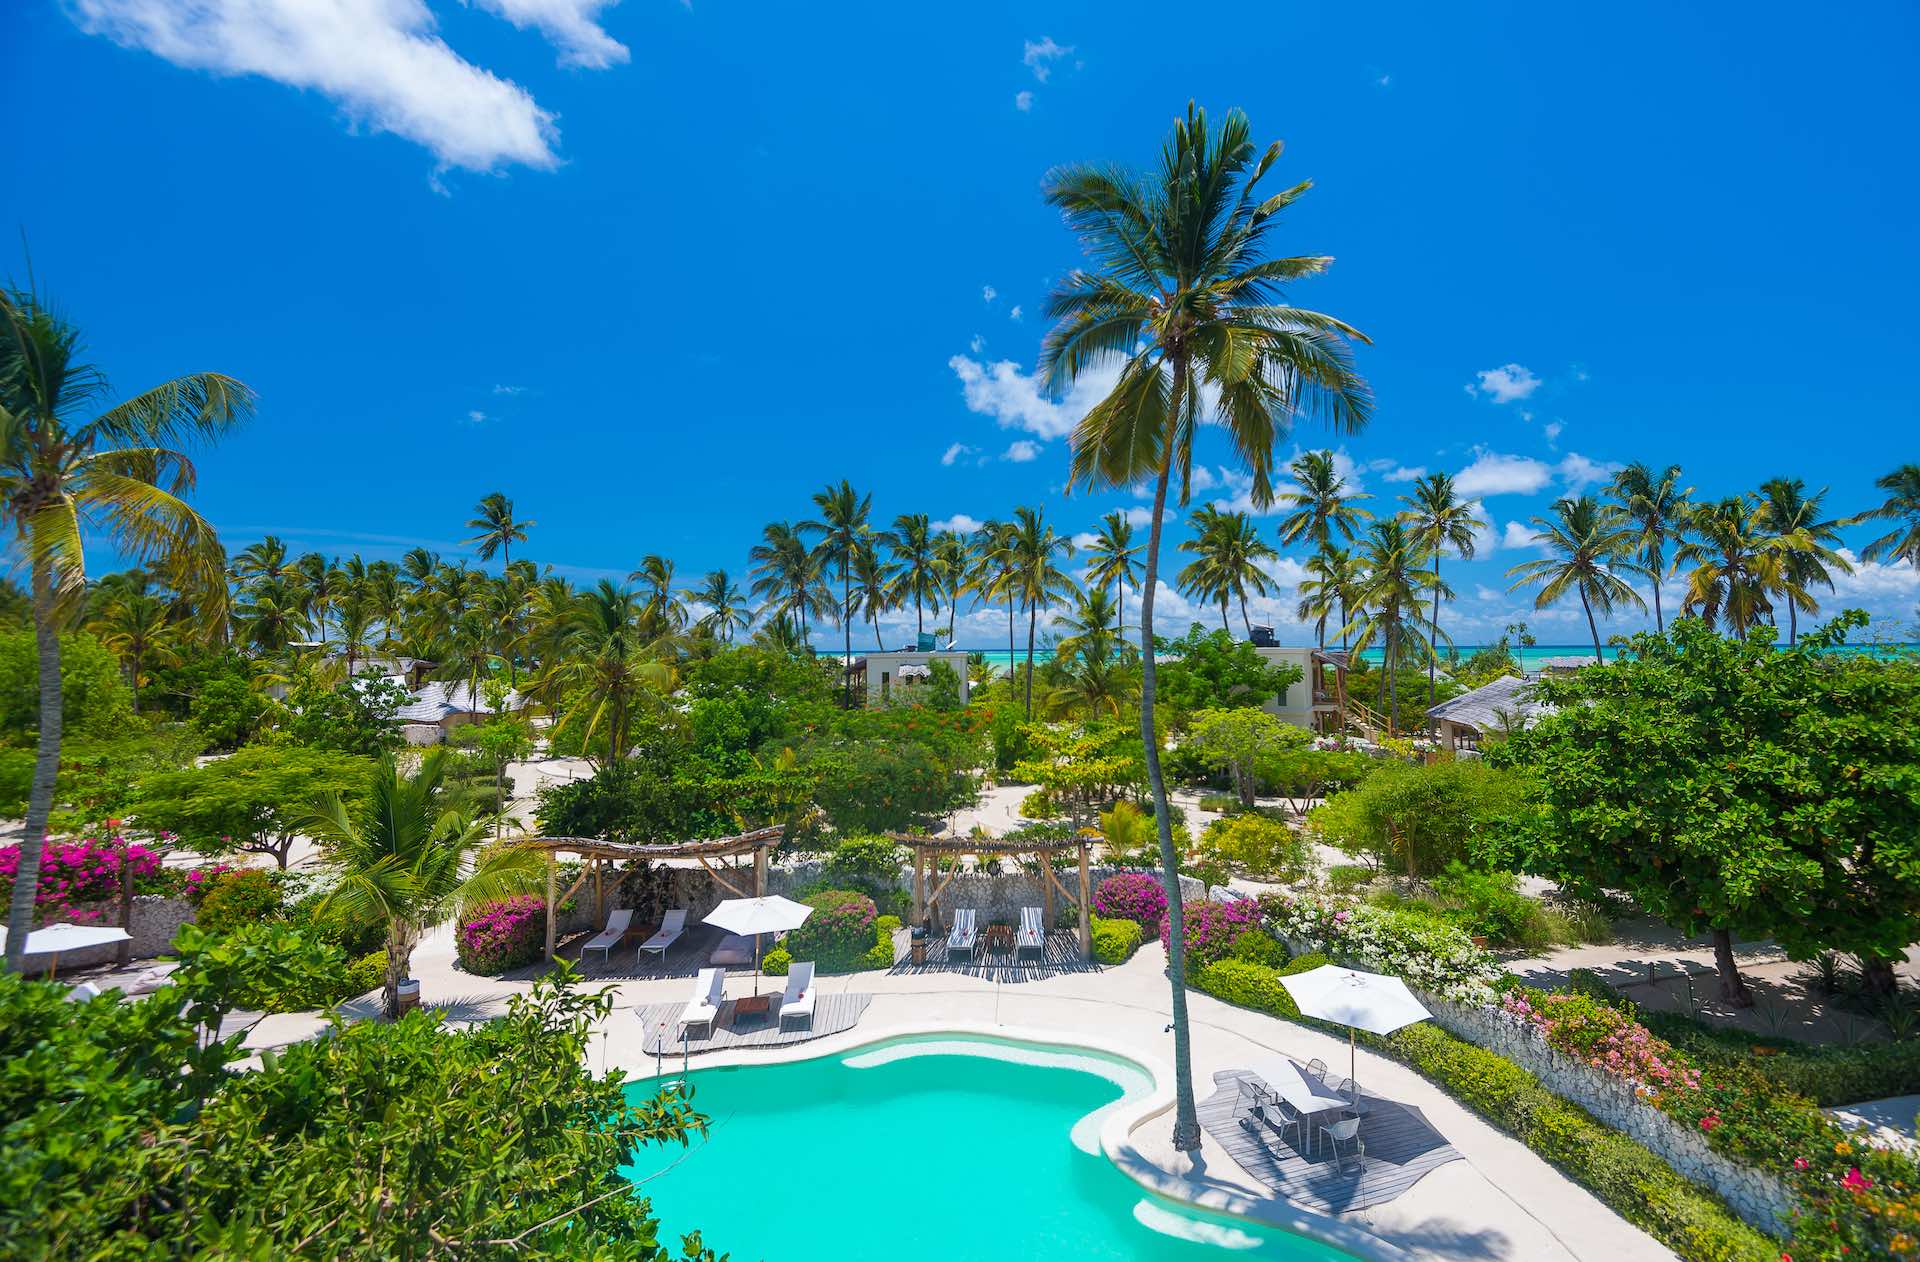 vue aérienne de l'hôtel avec palmiers, hôtel, transats - Whites and Villas